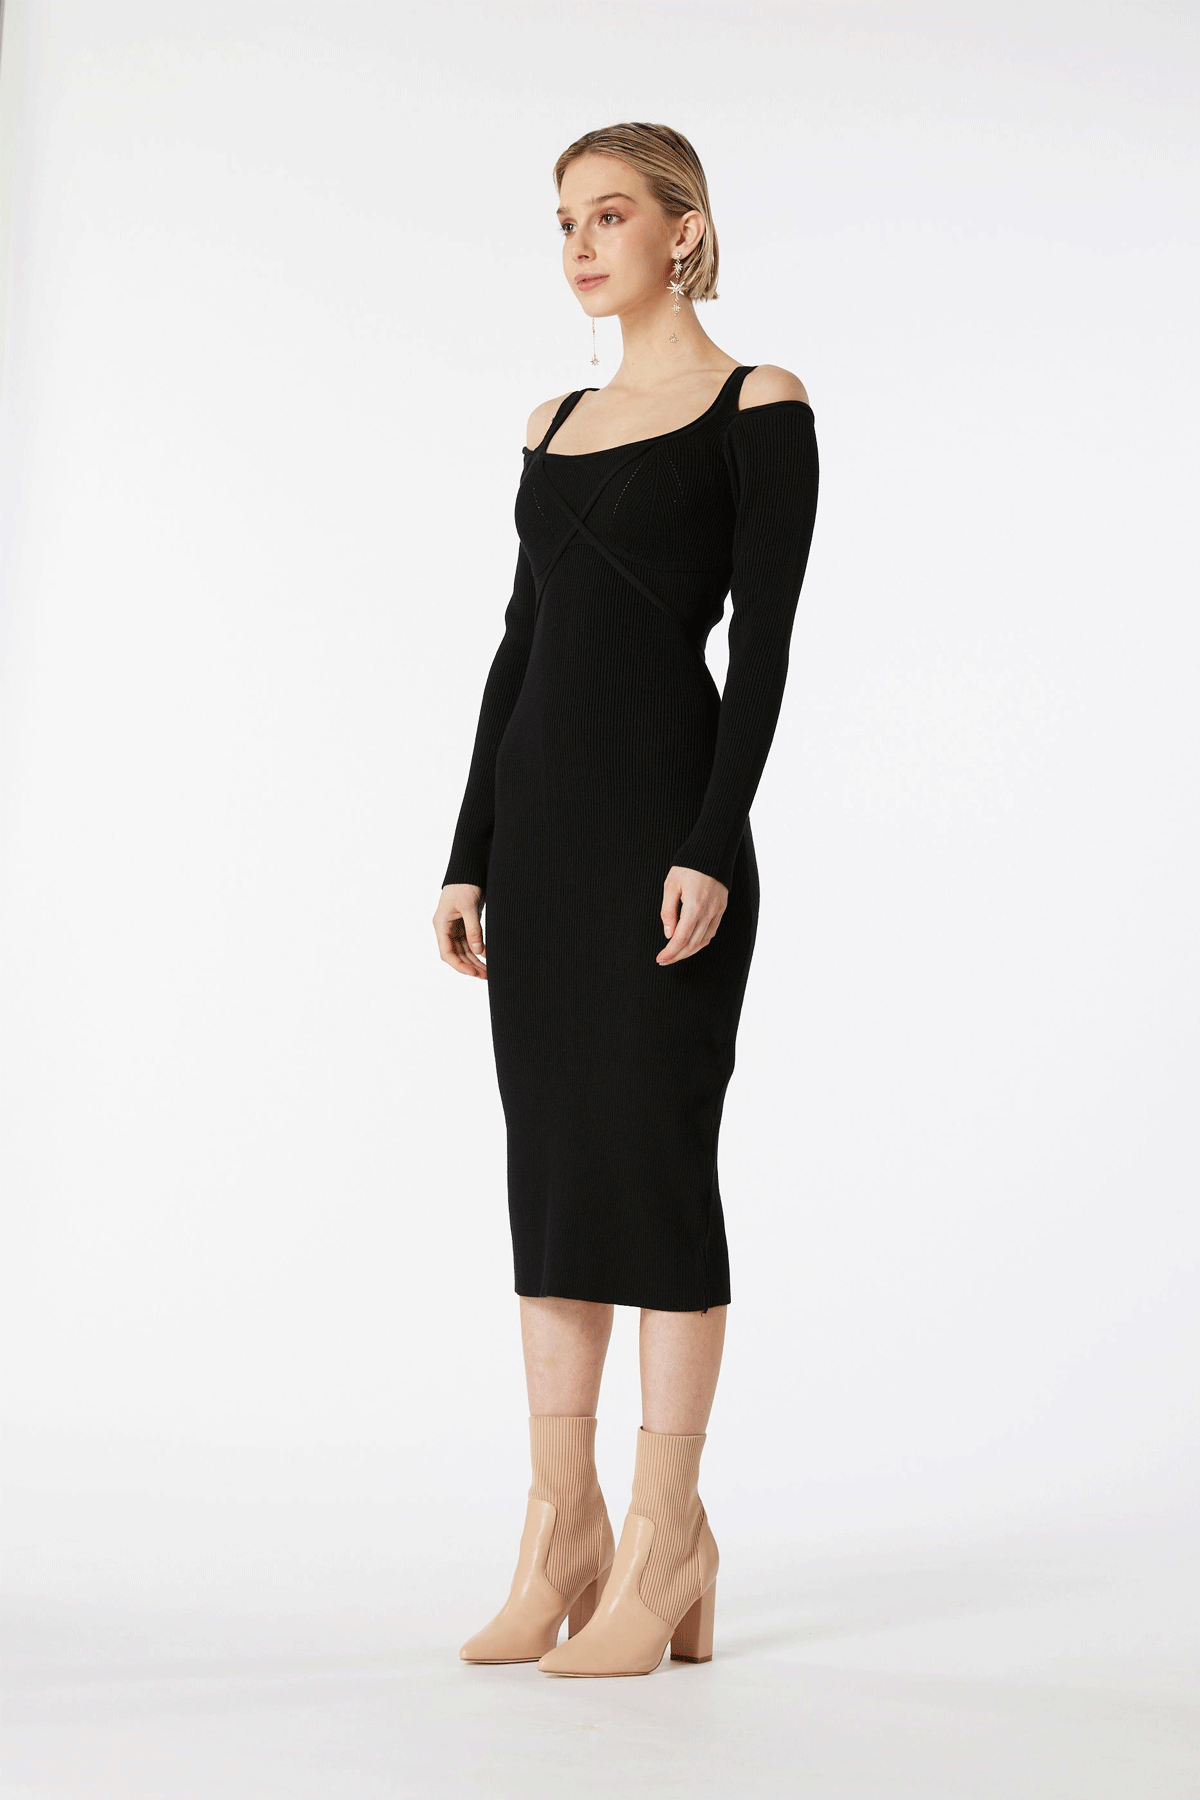 Elliatt Marisol Knit Dress Black